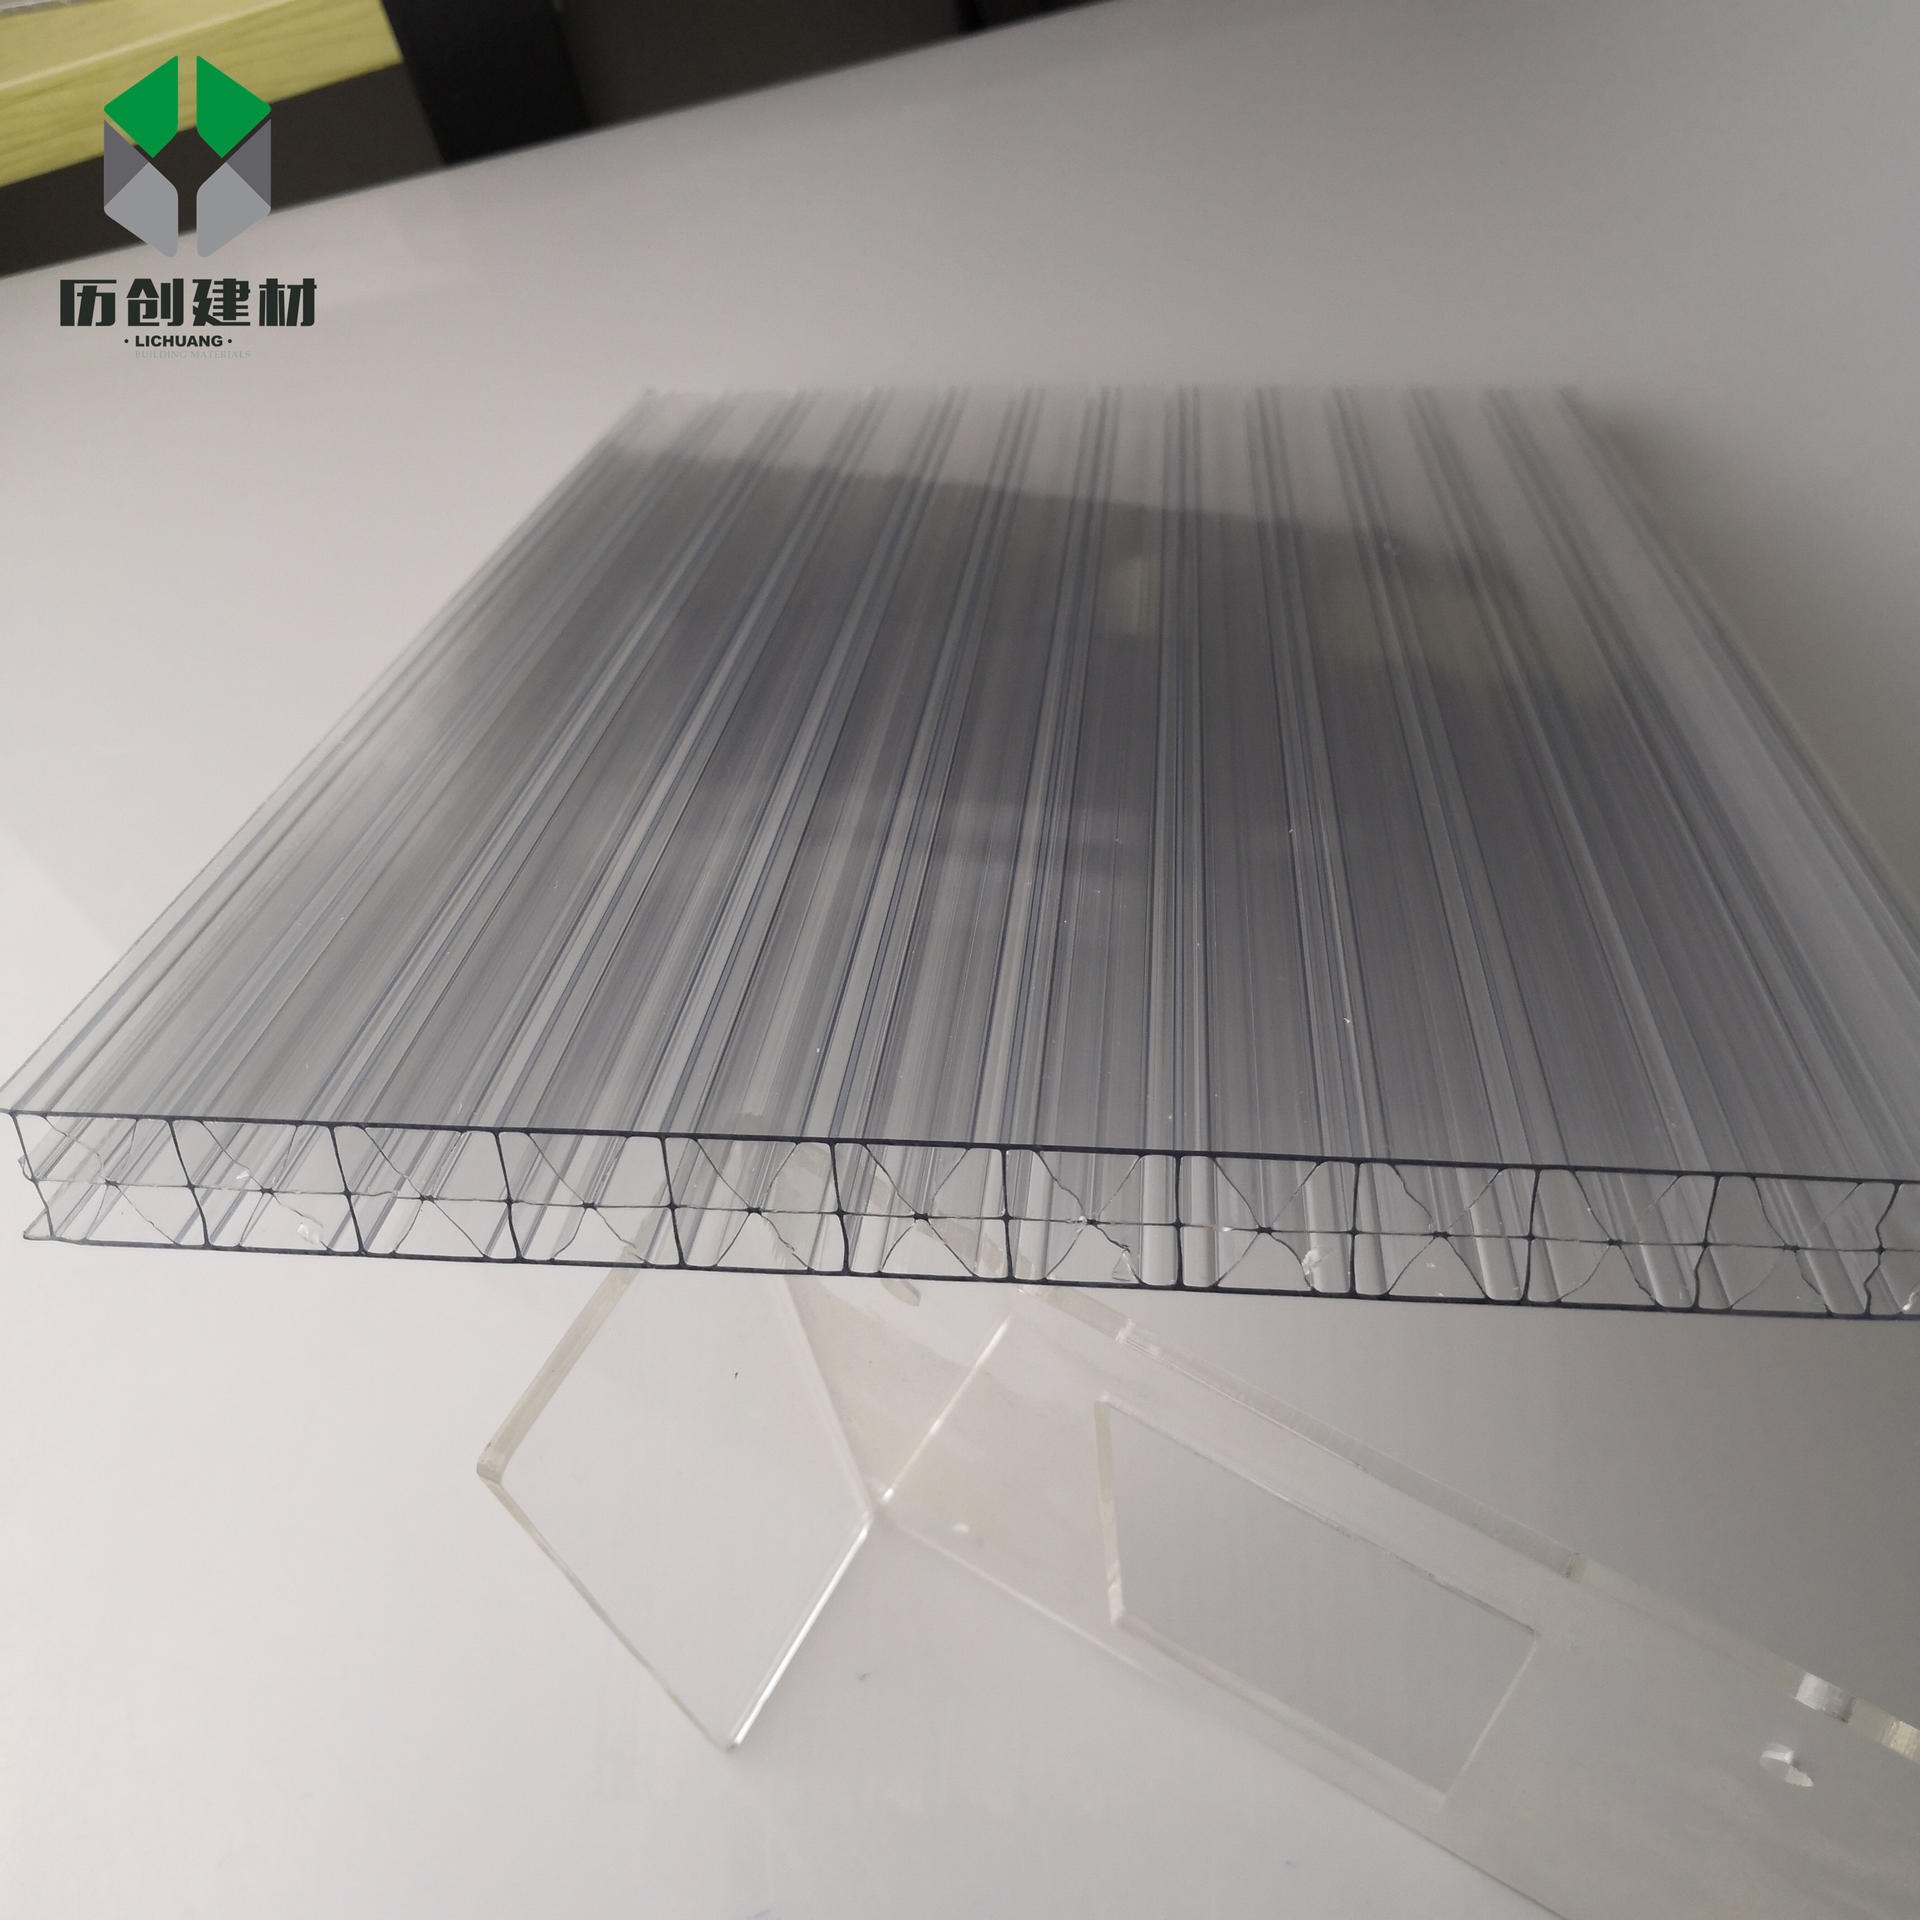 广东历创厂家批发供应18mm透明两层阳光板米字格pc板材顶棚车棚过道雨棚PC板图片